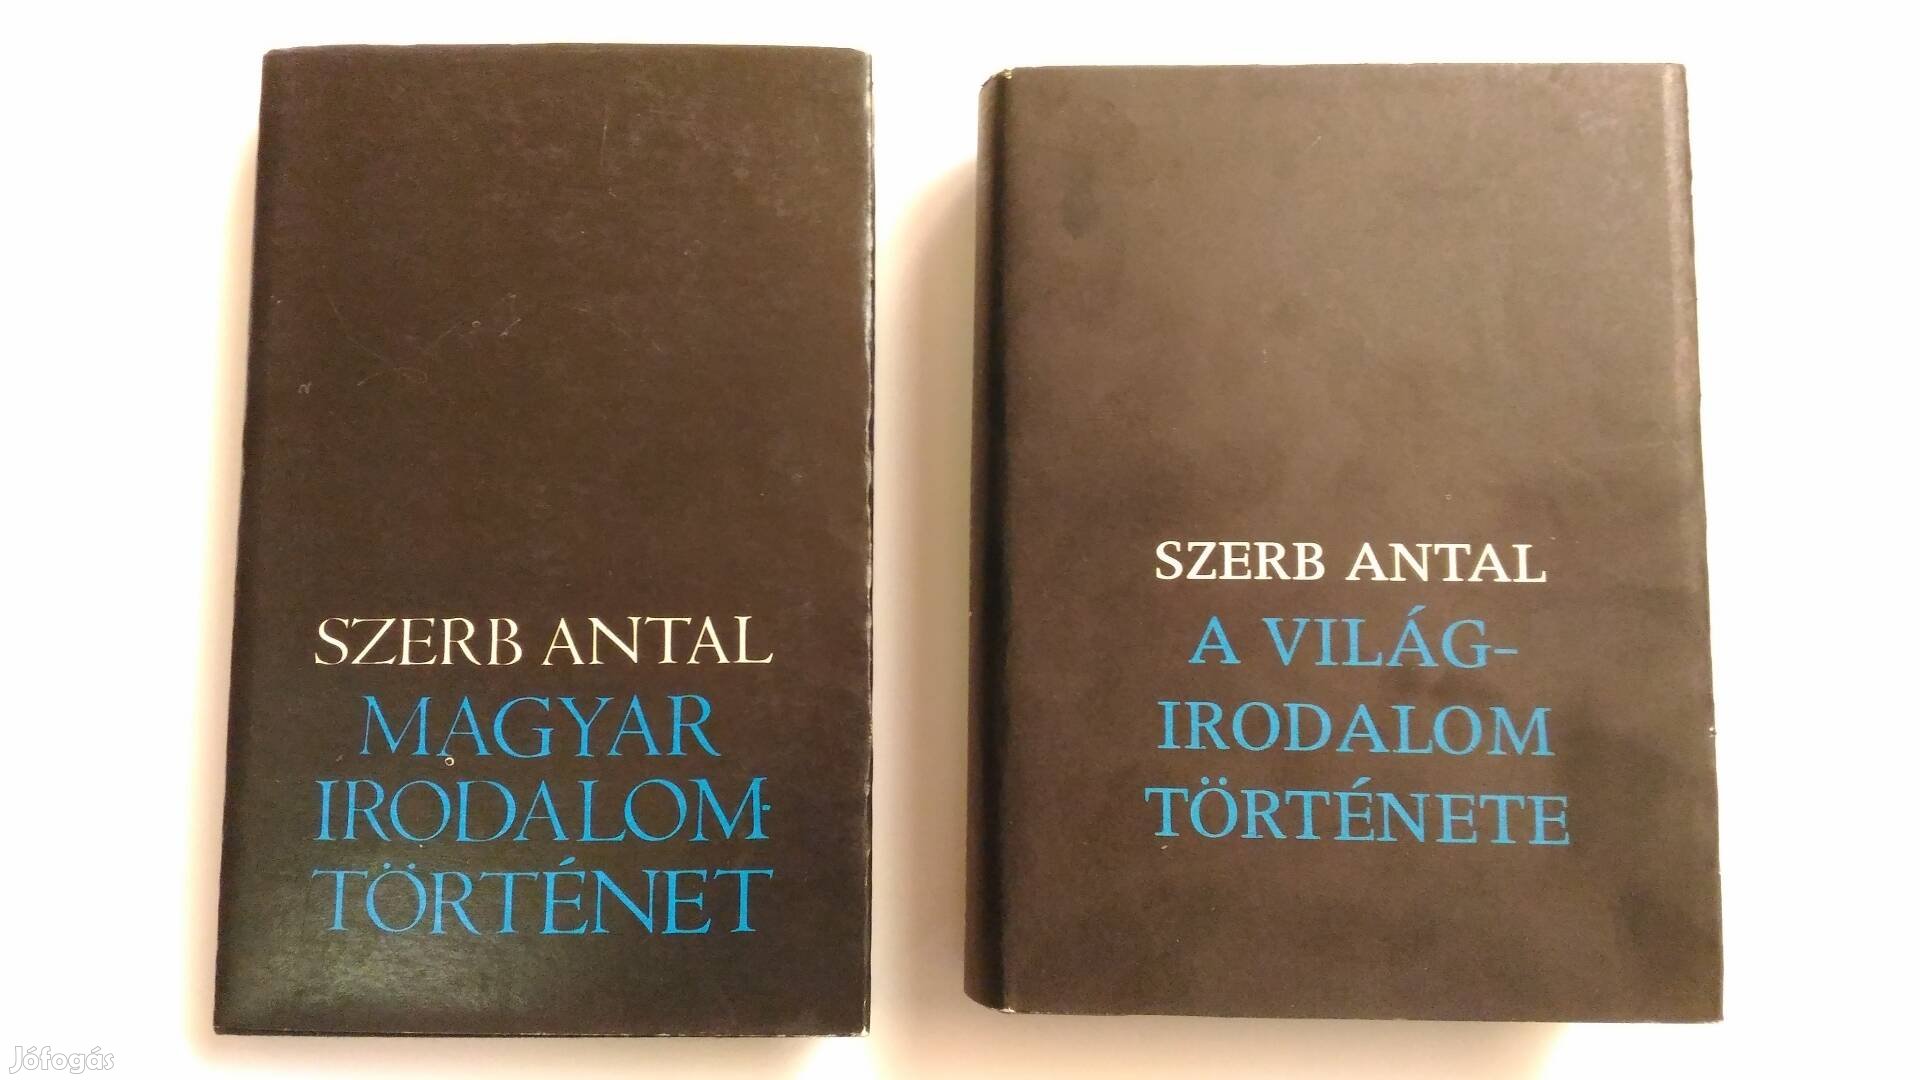 Szerb Antal Irodalomtörténet című könyvek 